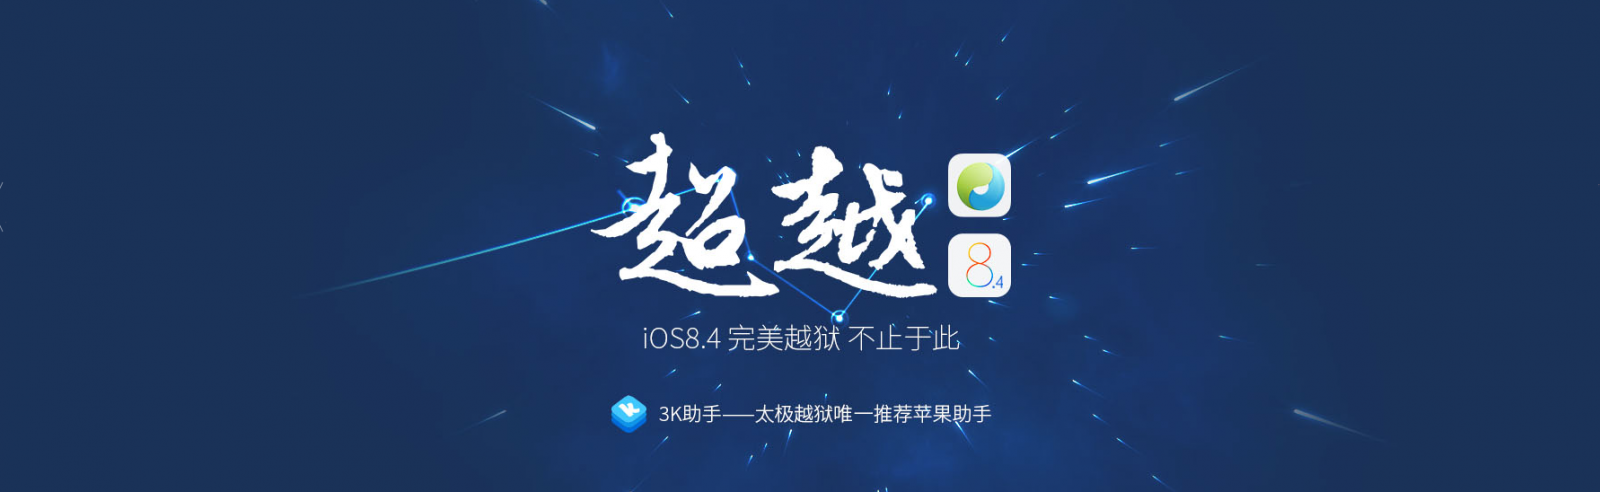 8.4 actualización de iOS